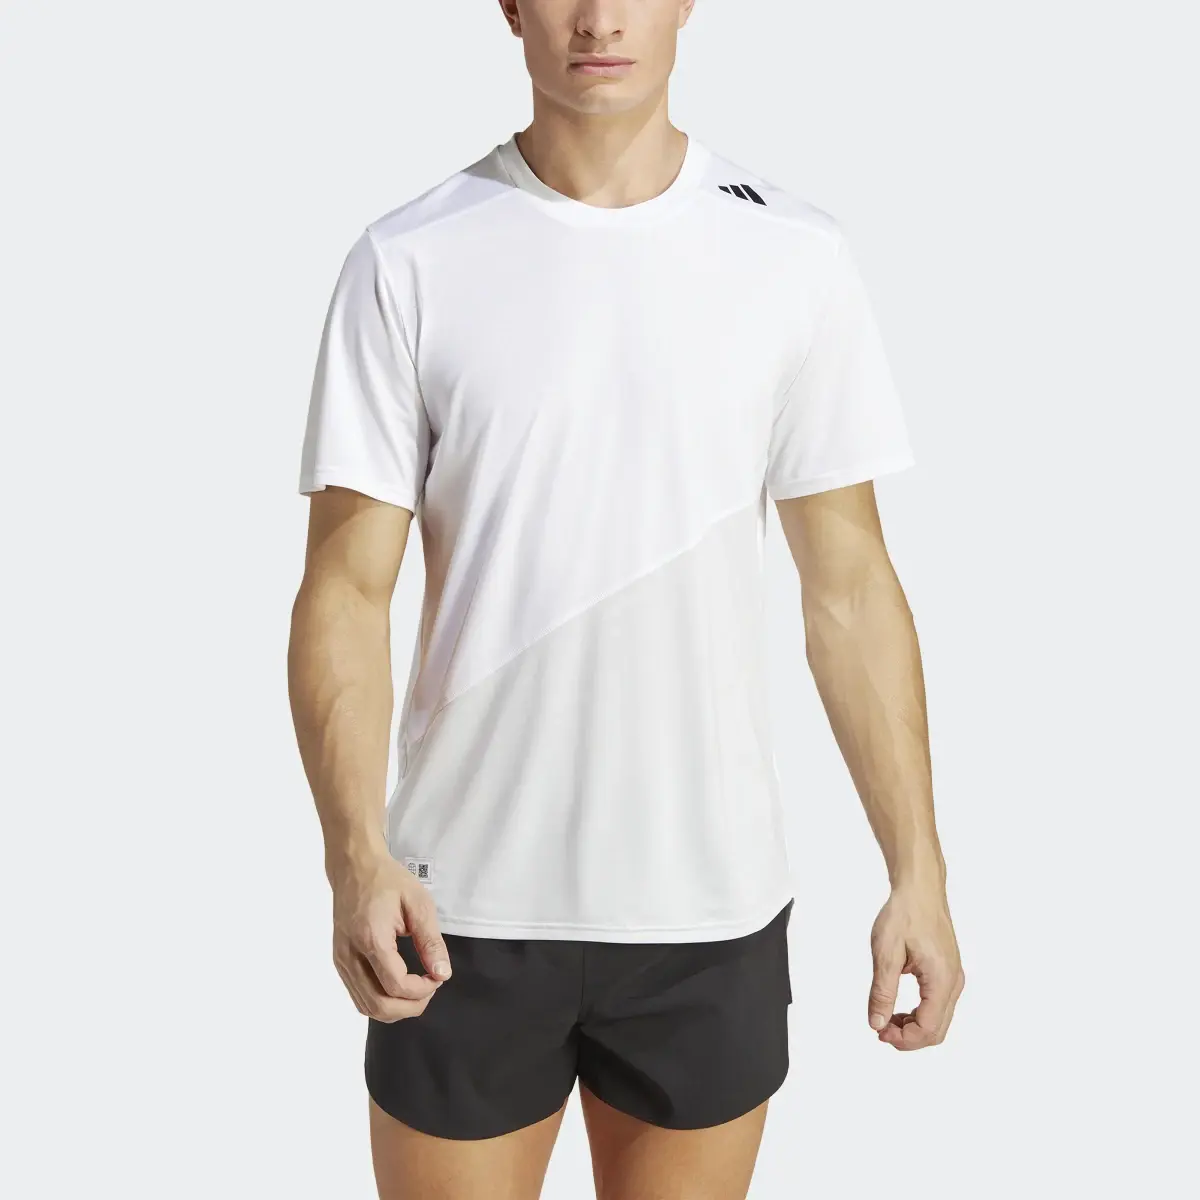 Adidas T-shirt de Running Made to be Remade. 1